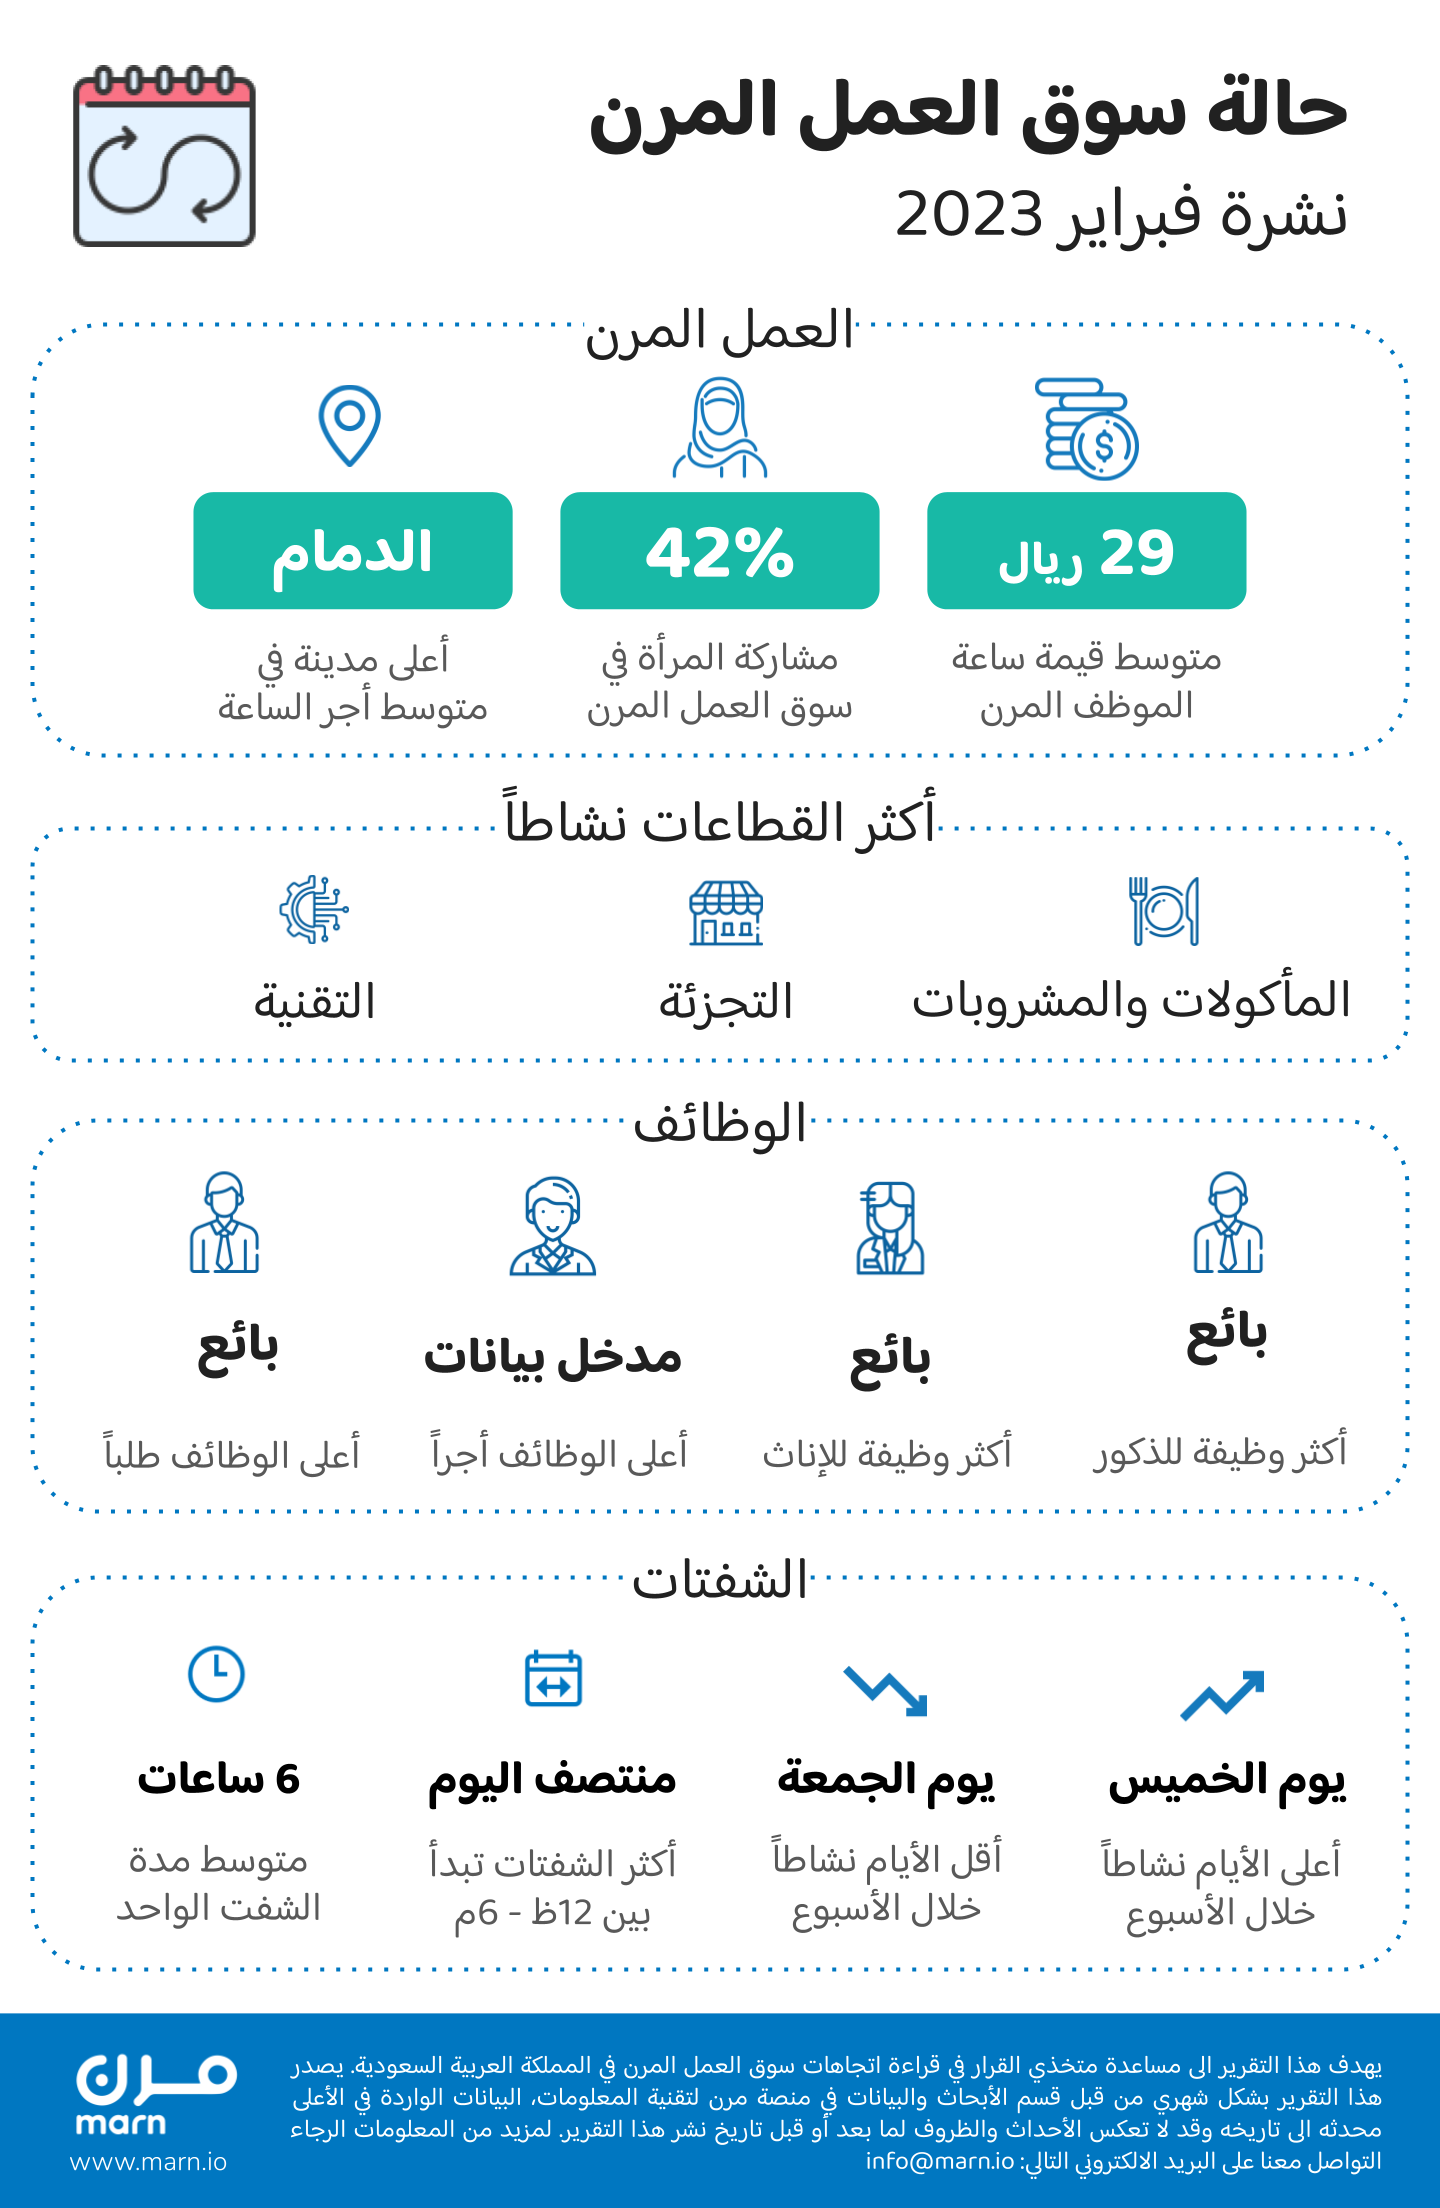 جديد سوق العمل السعودي في فبراير 2023